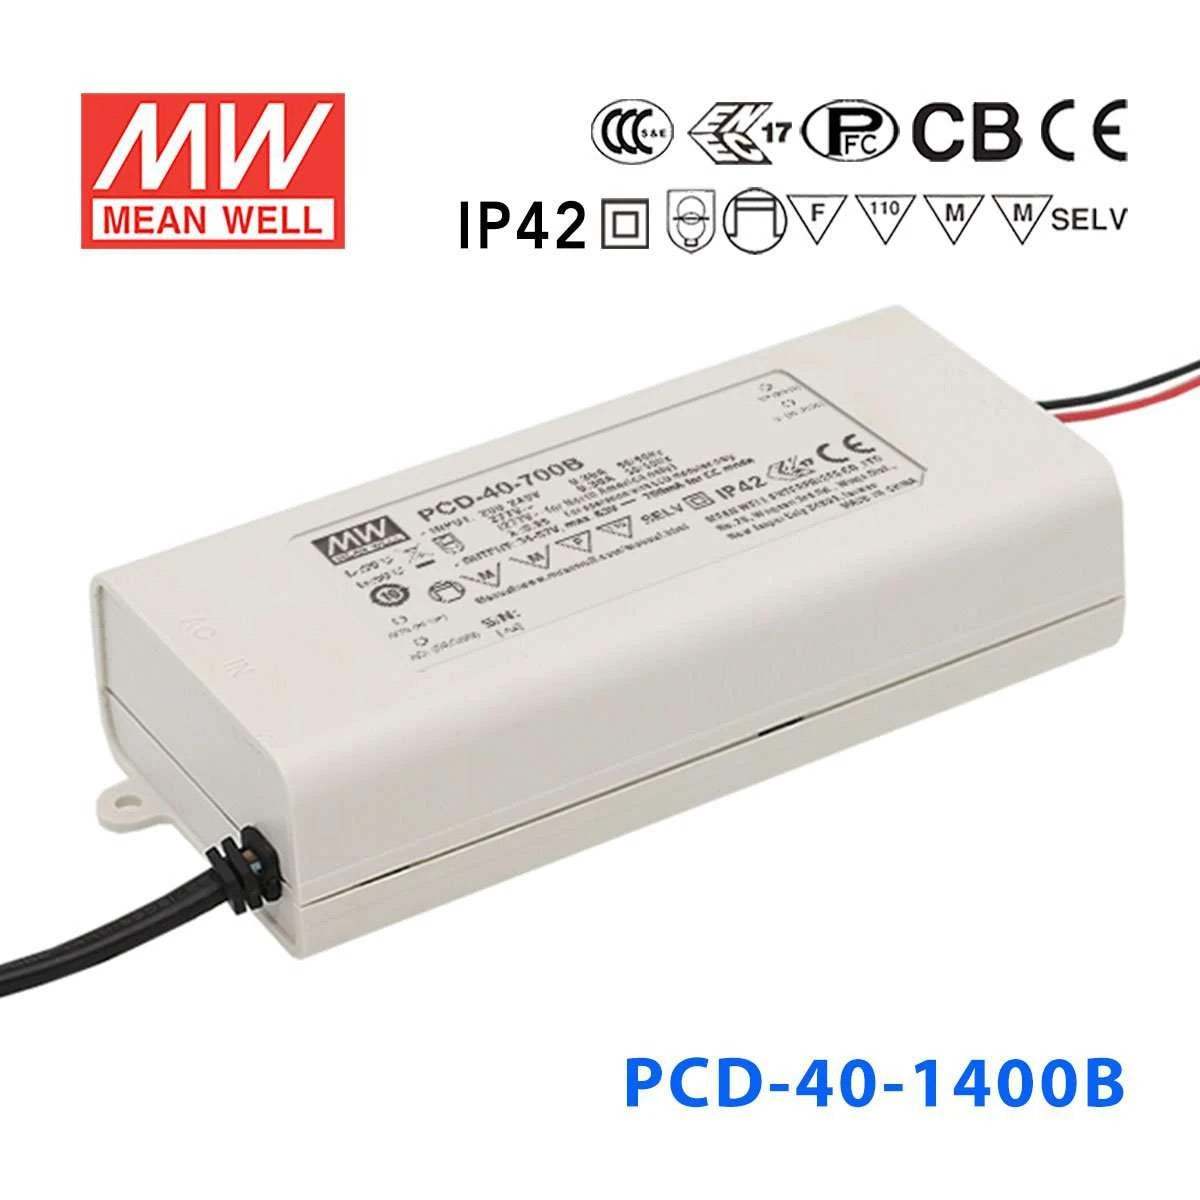 Mean Well PCD-40-1400B Power Supply 40W  1400mA